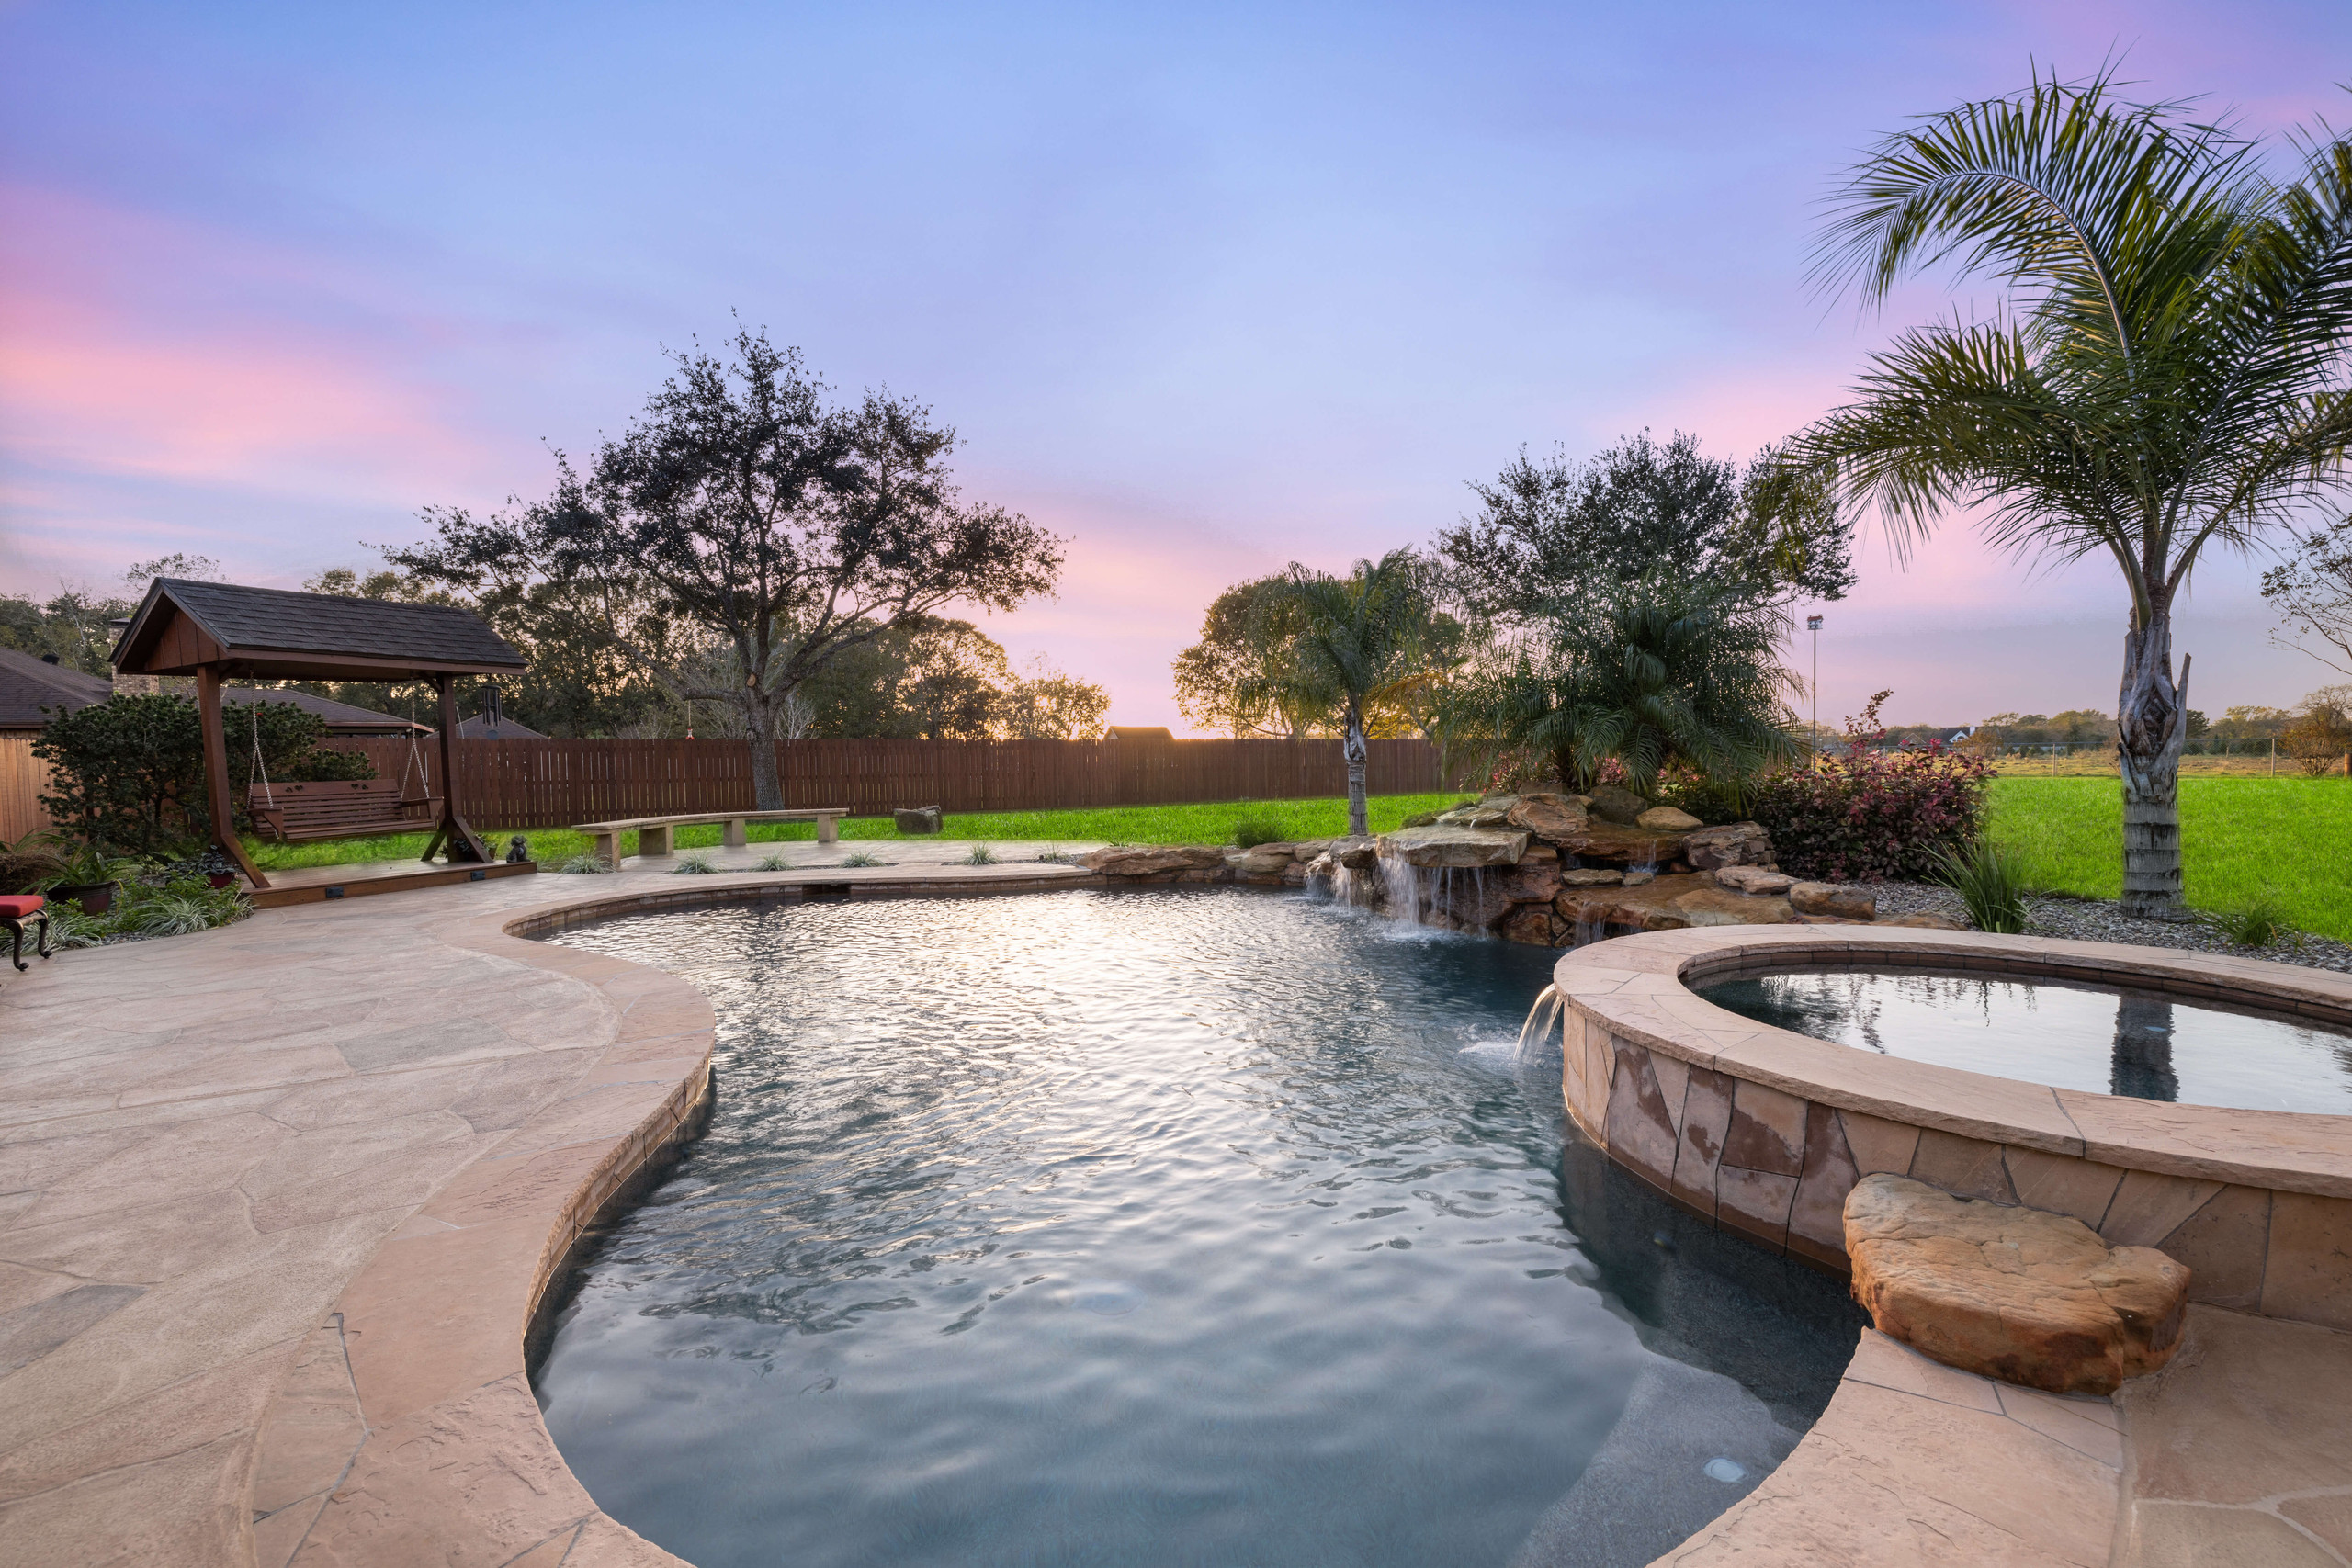 Inground pool retreat remodel construction backyard Texas sunset views